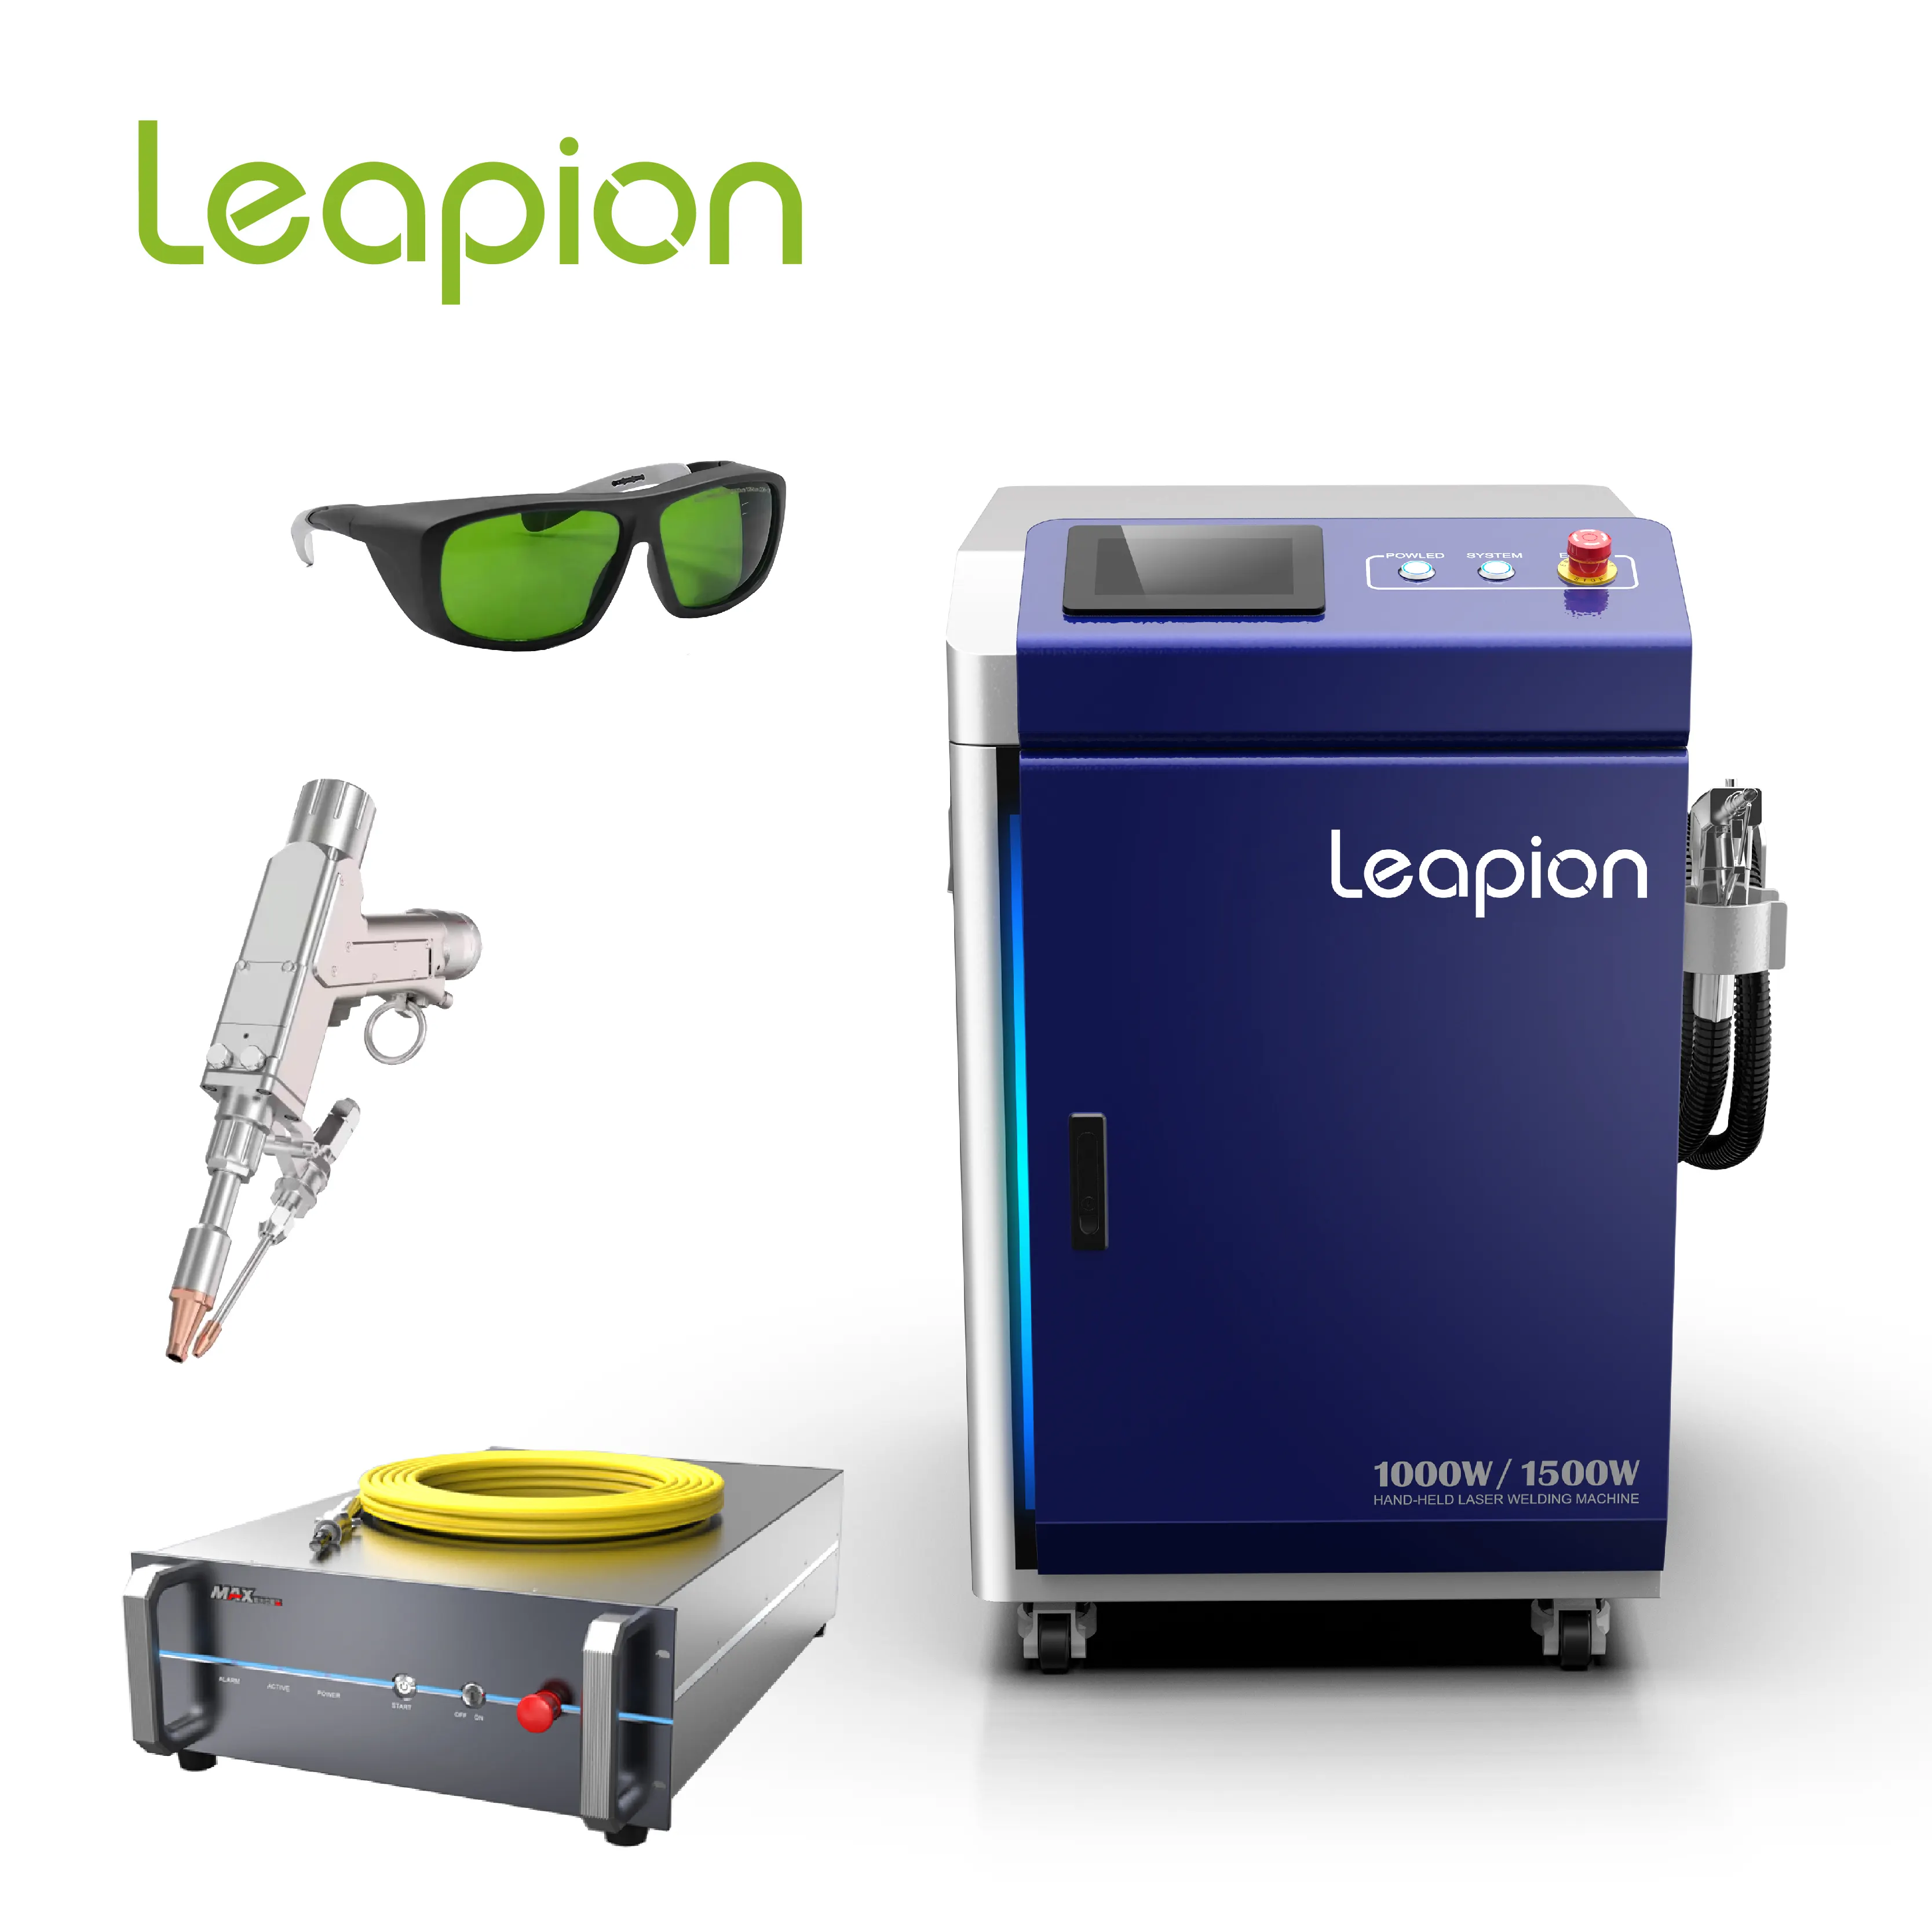 Hochwertiges Leapion-Laser-Schweißgerät 4-in-1 Eisen-Laser-Schweißgerät 1.000w Laser-Schweißgerät Bestseller mit hoher Qualität